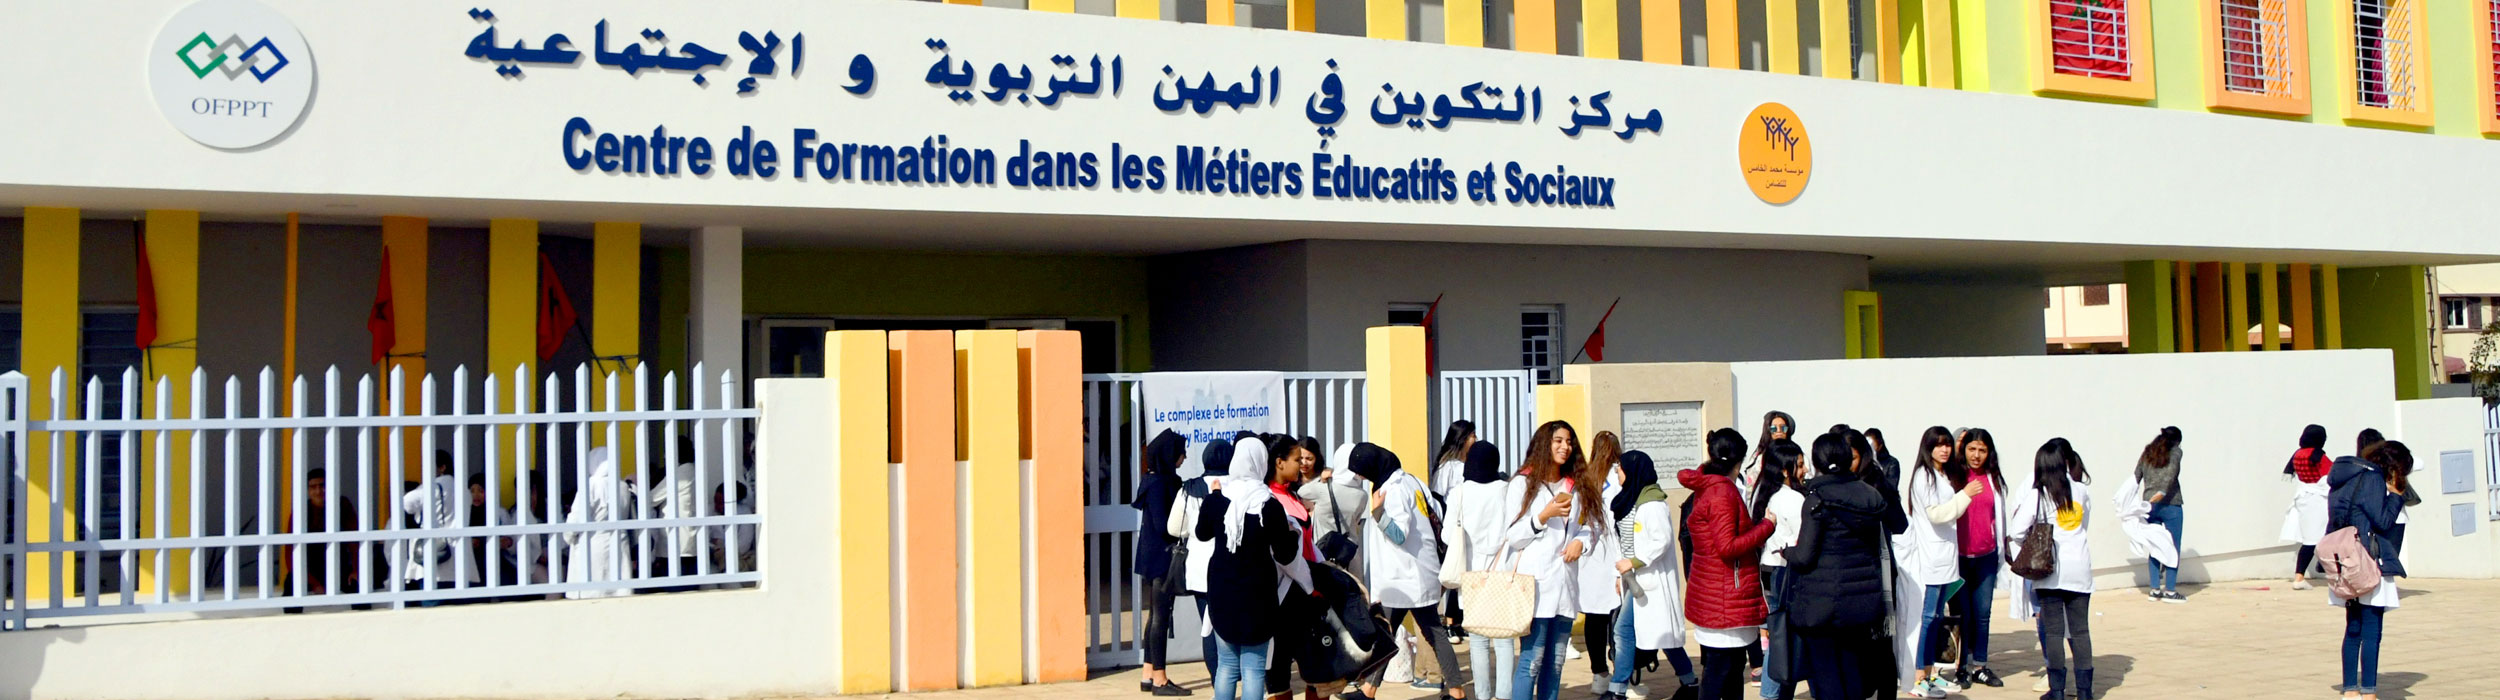 FM5 - Centre de Formation dans les Métiers Éducatifs et Sociaux Yaacoub Al Mansour - Rabat